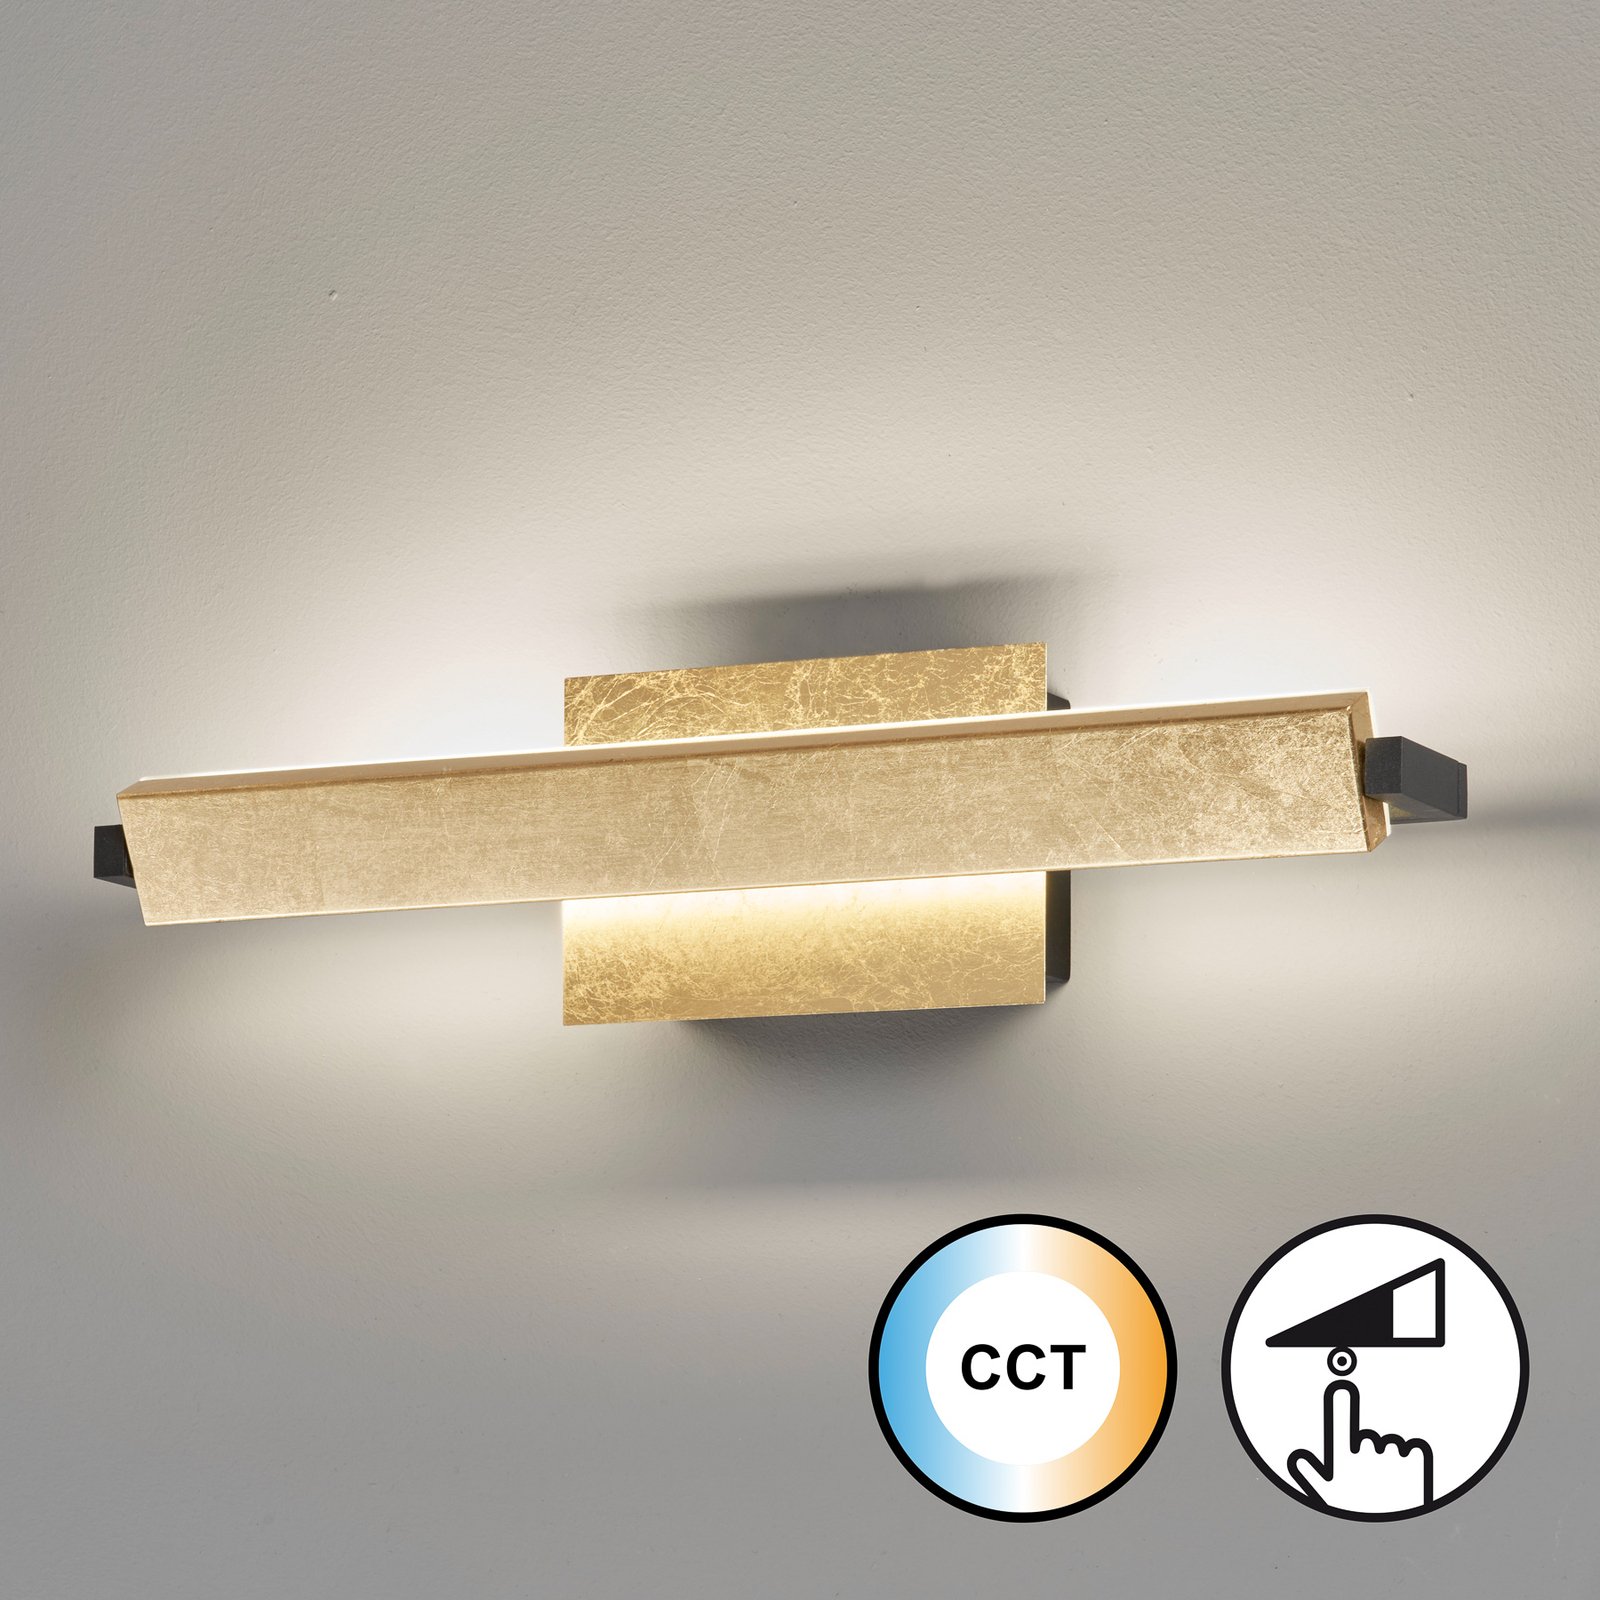 LED nástěnné svítidlo Pare, zlatá barva, šířka 40 cm, kov, CCT